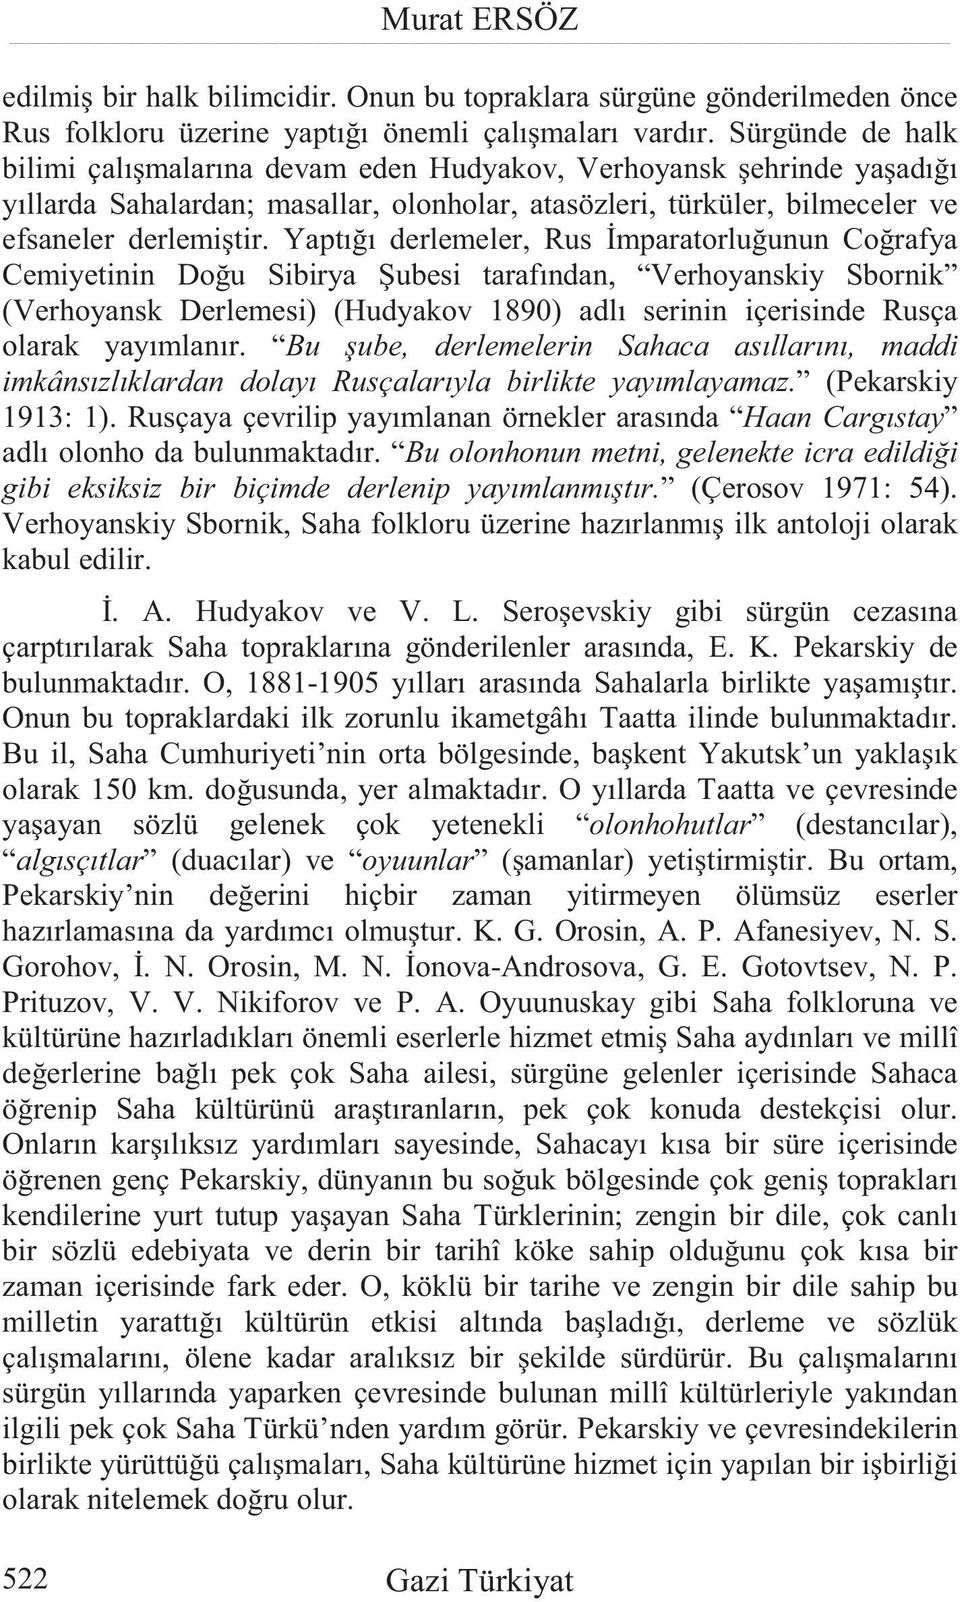 Yaptı ı derlemeler, Rus mparatorlu unun Co rafya Cemiyetinin Do u Sibirya ubesi tarafından, Verhoyanskiy Sbornik (Verhoyansk Derlemesi) (Hudyakov 1890) adlı serinin içerisinde Rusça olarak yayımlanır.